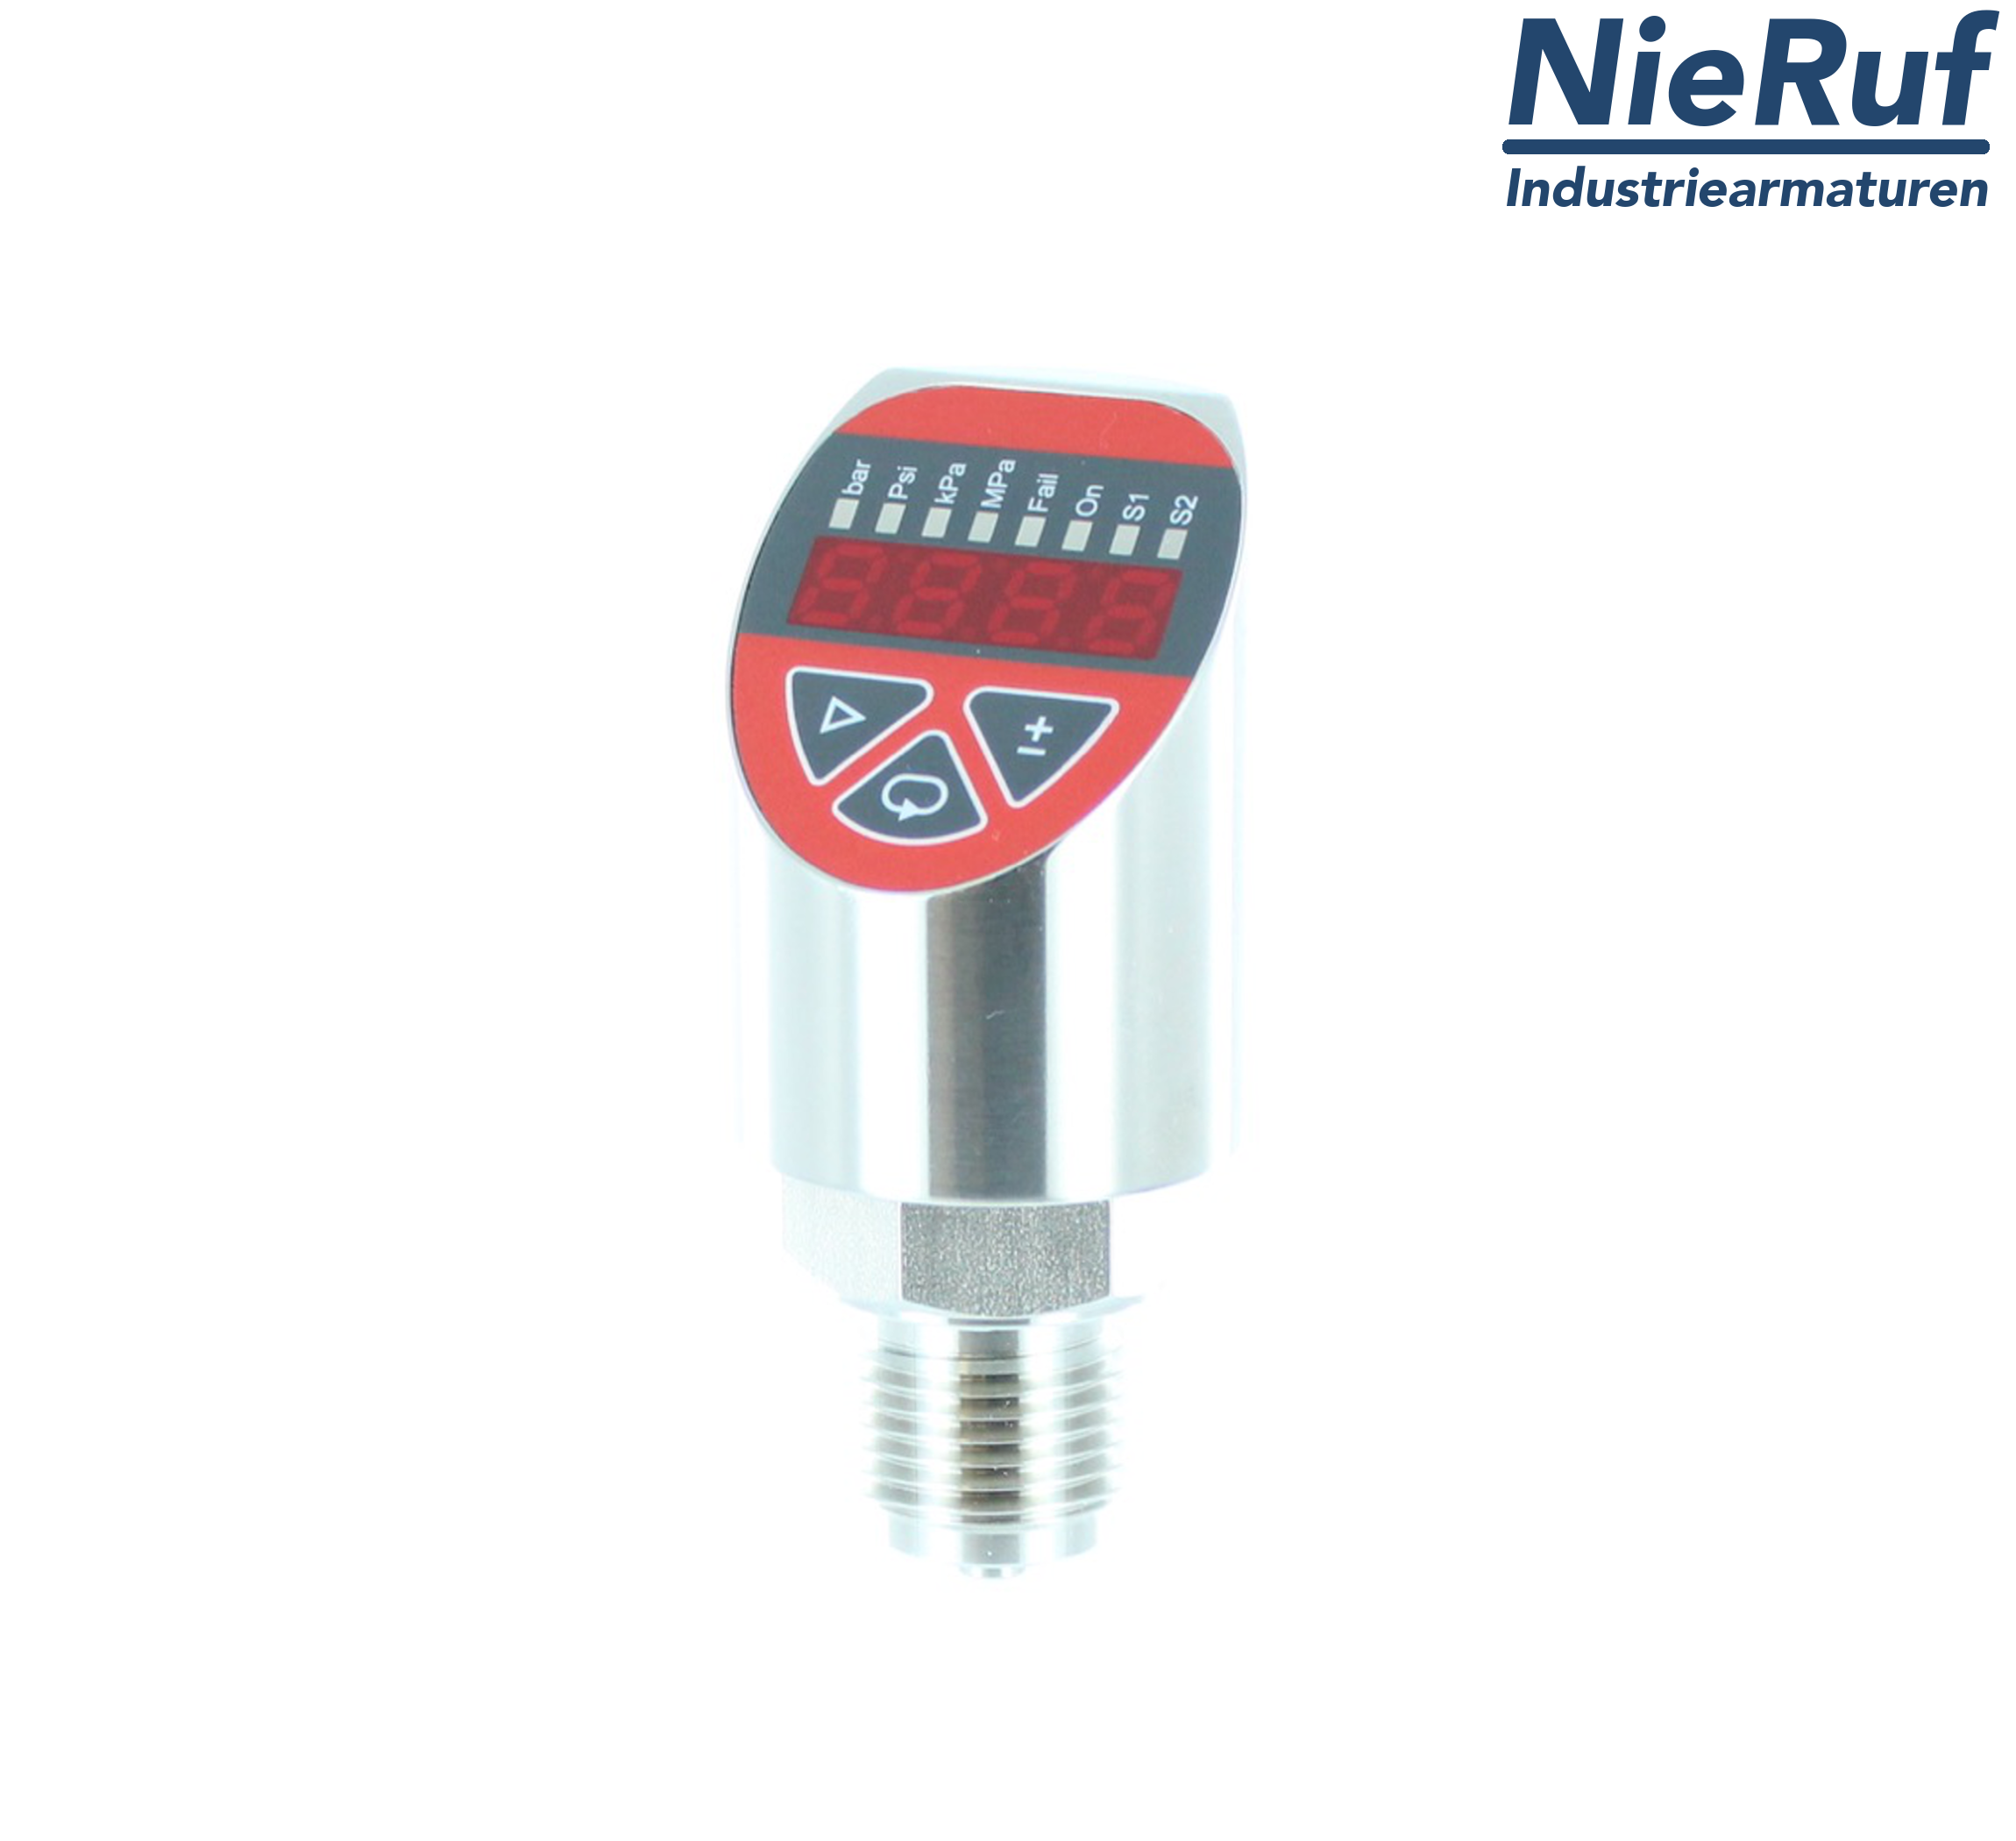 digital pressure sensor G 1/4" B 4-wire: 1xPNP, 1x4 - 20mA, Desina FPM 0,0 - 60,0 bar